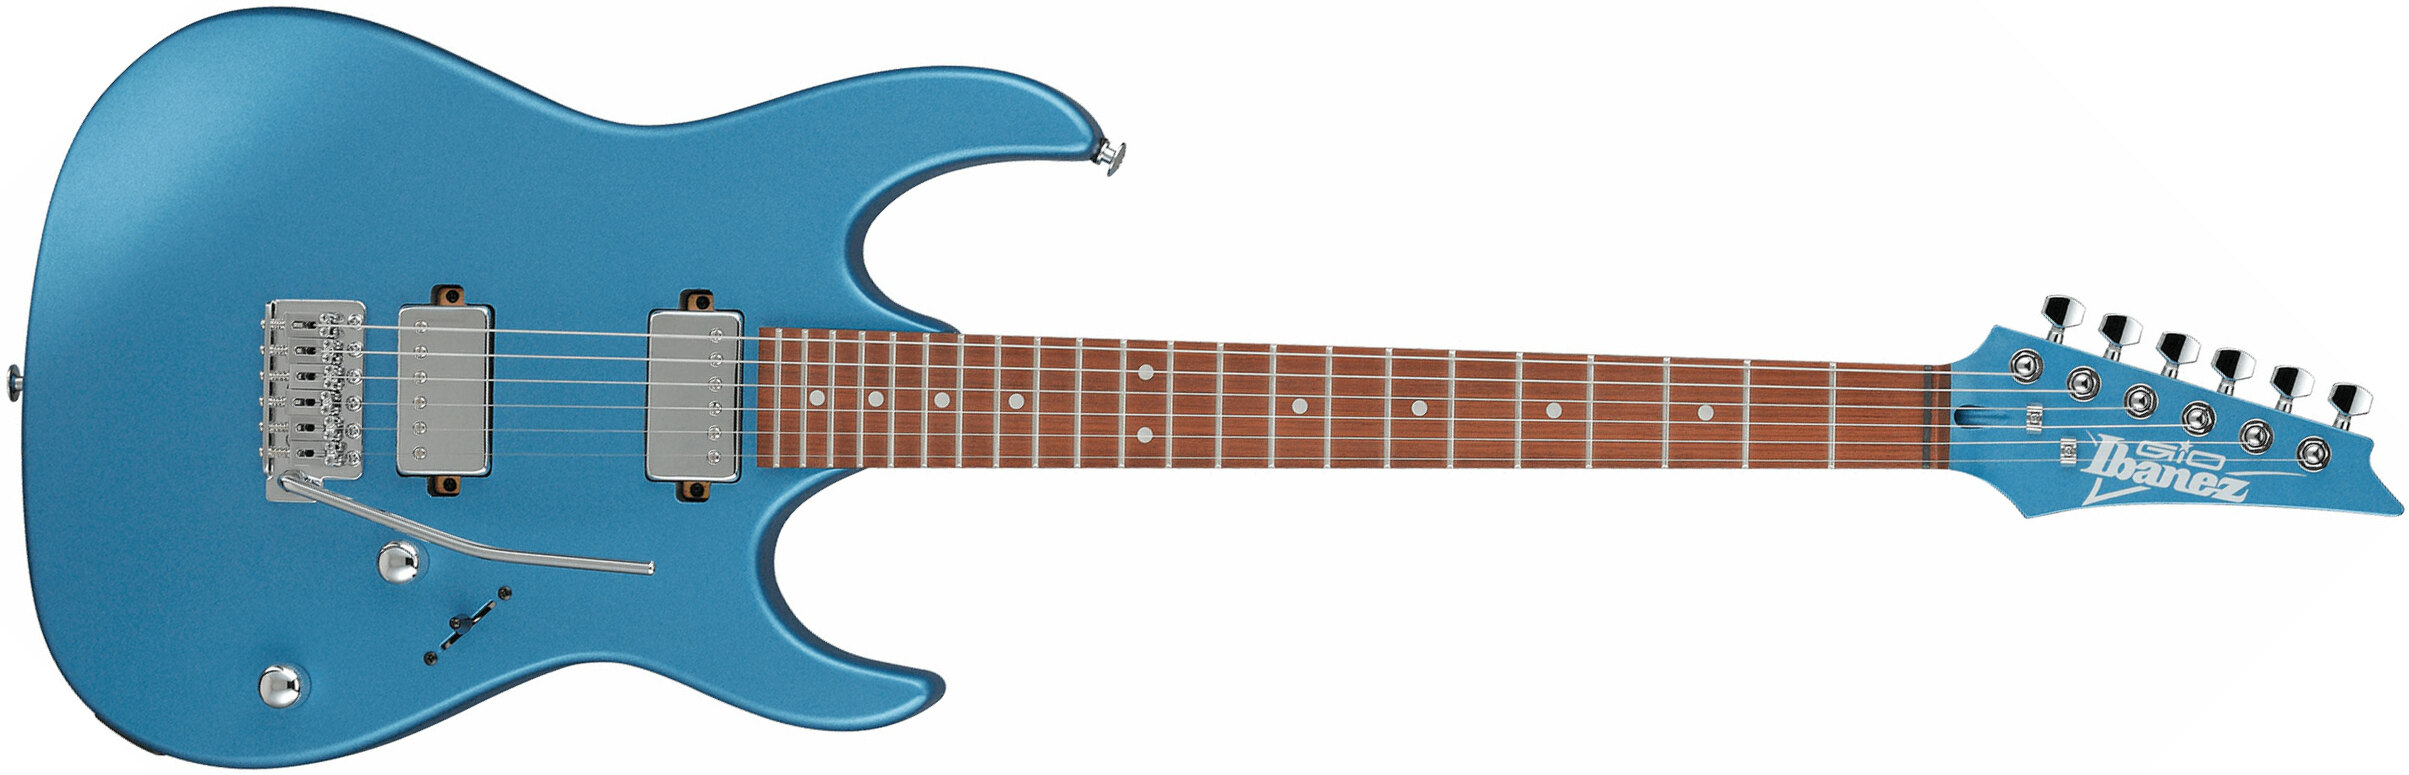 Ibanez Grx120sp Mlm Gio 2h Trem Jat - Metallic Light Blue Matte - Guitare Électrique Forme Str - Main picture